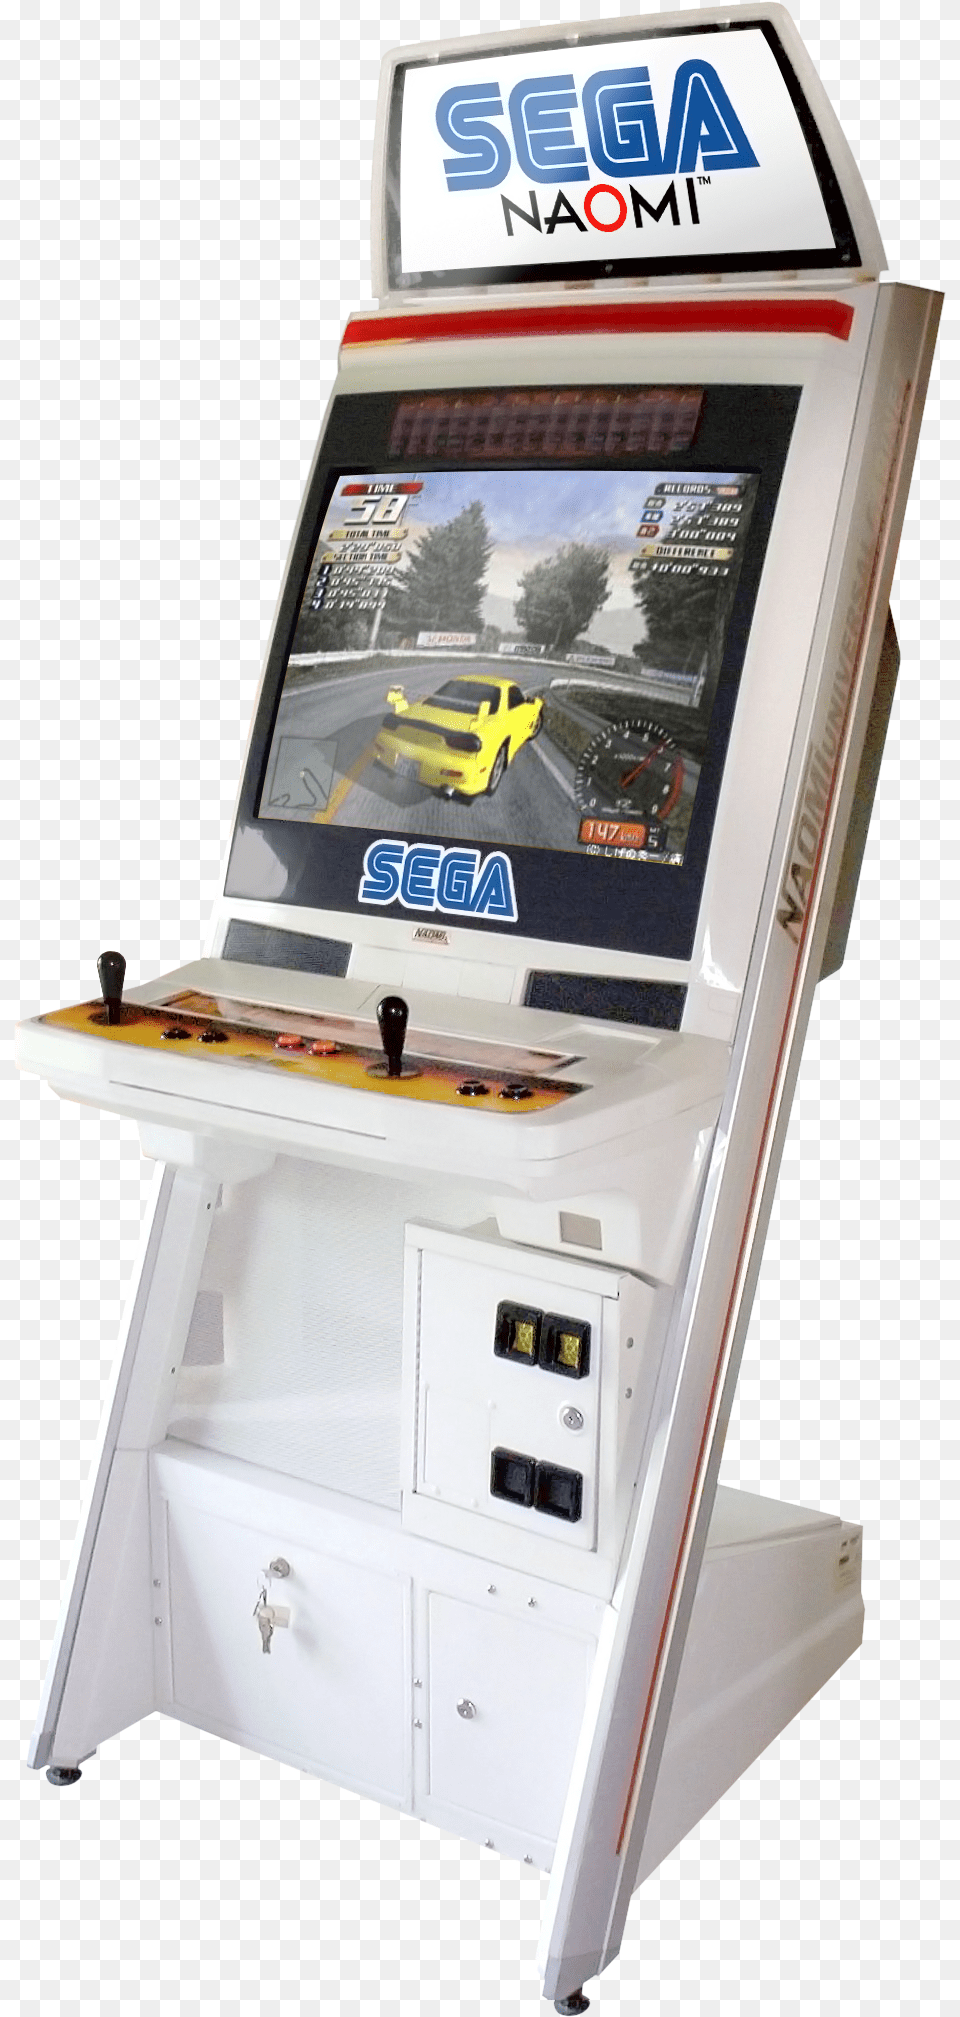 Sega Naomi Arcade Cabinet, Arcade Game Machine, Game, Car, Transportation Free Png Download